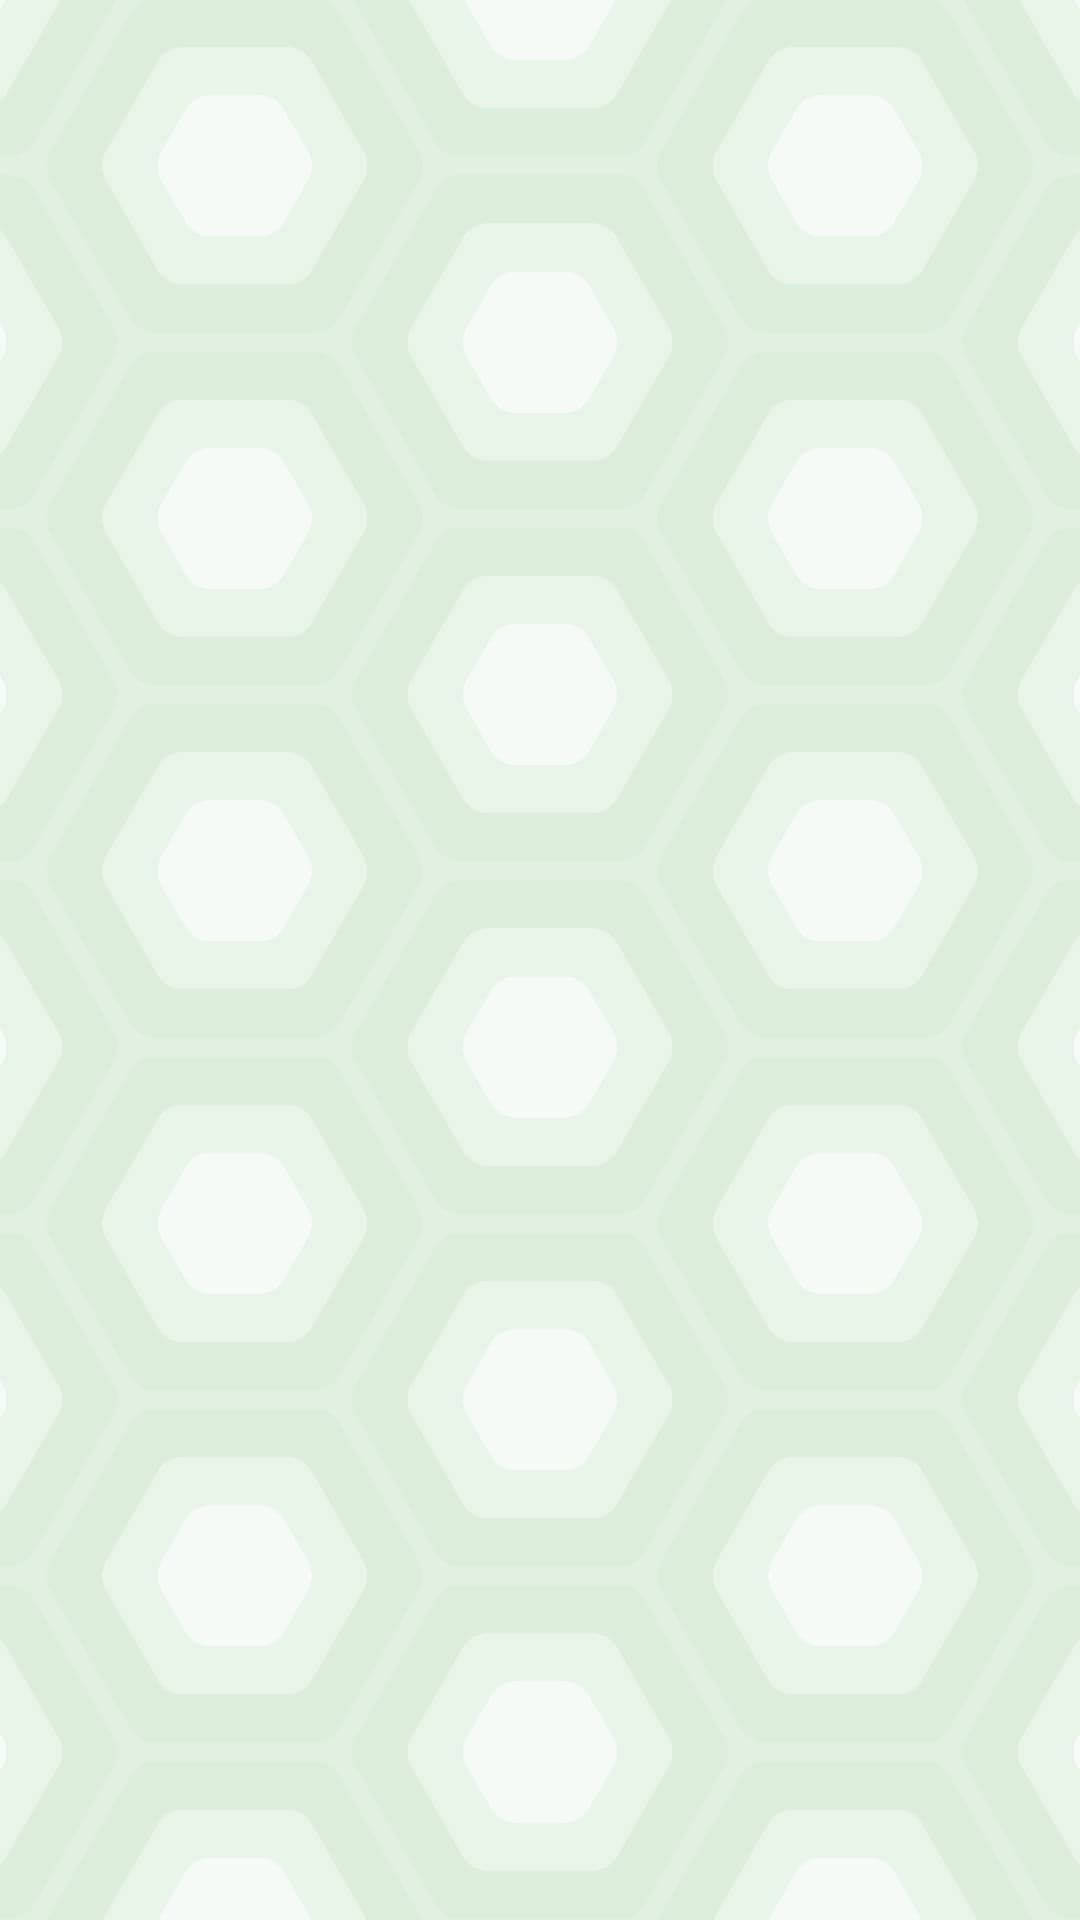 Hijauhexagon-muster Wallpaper